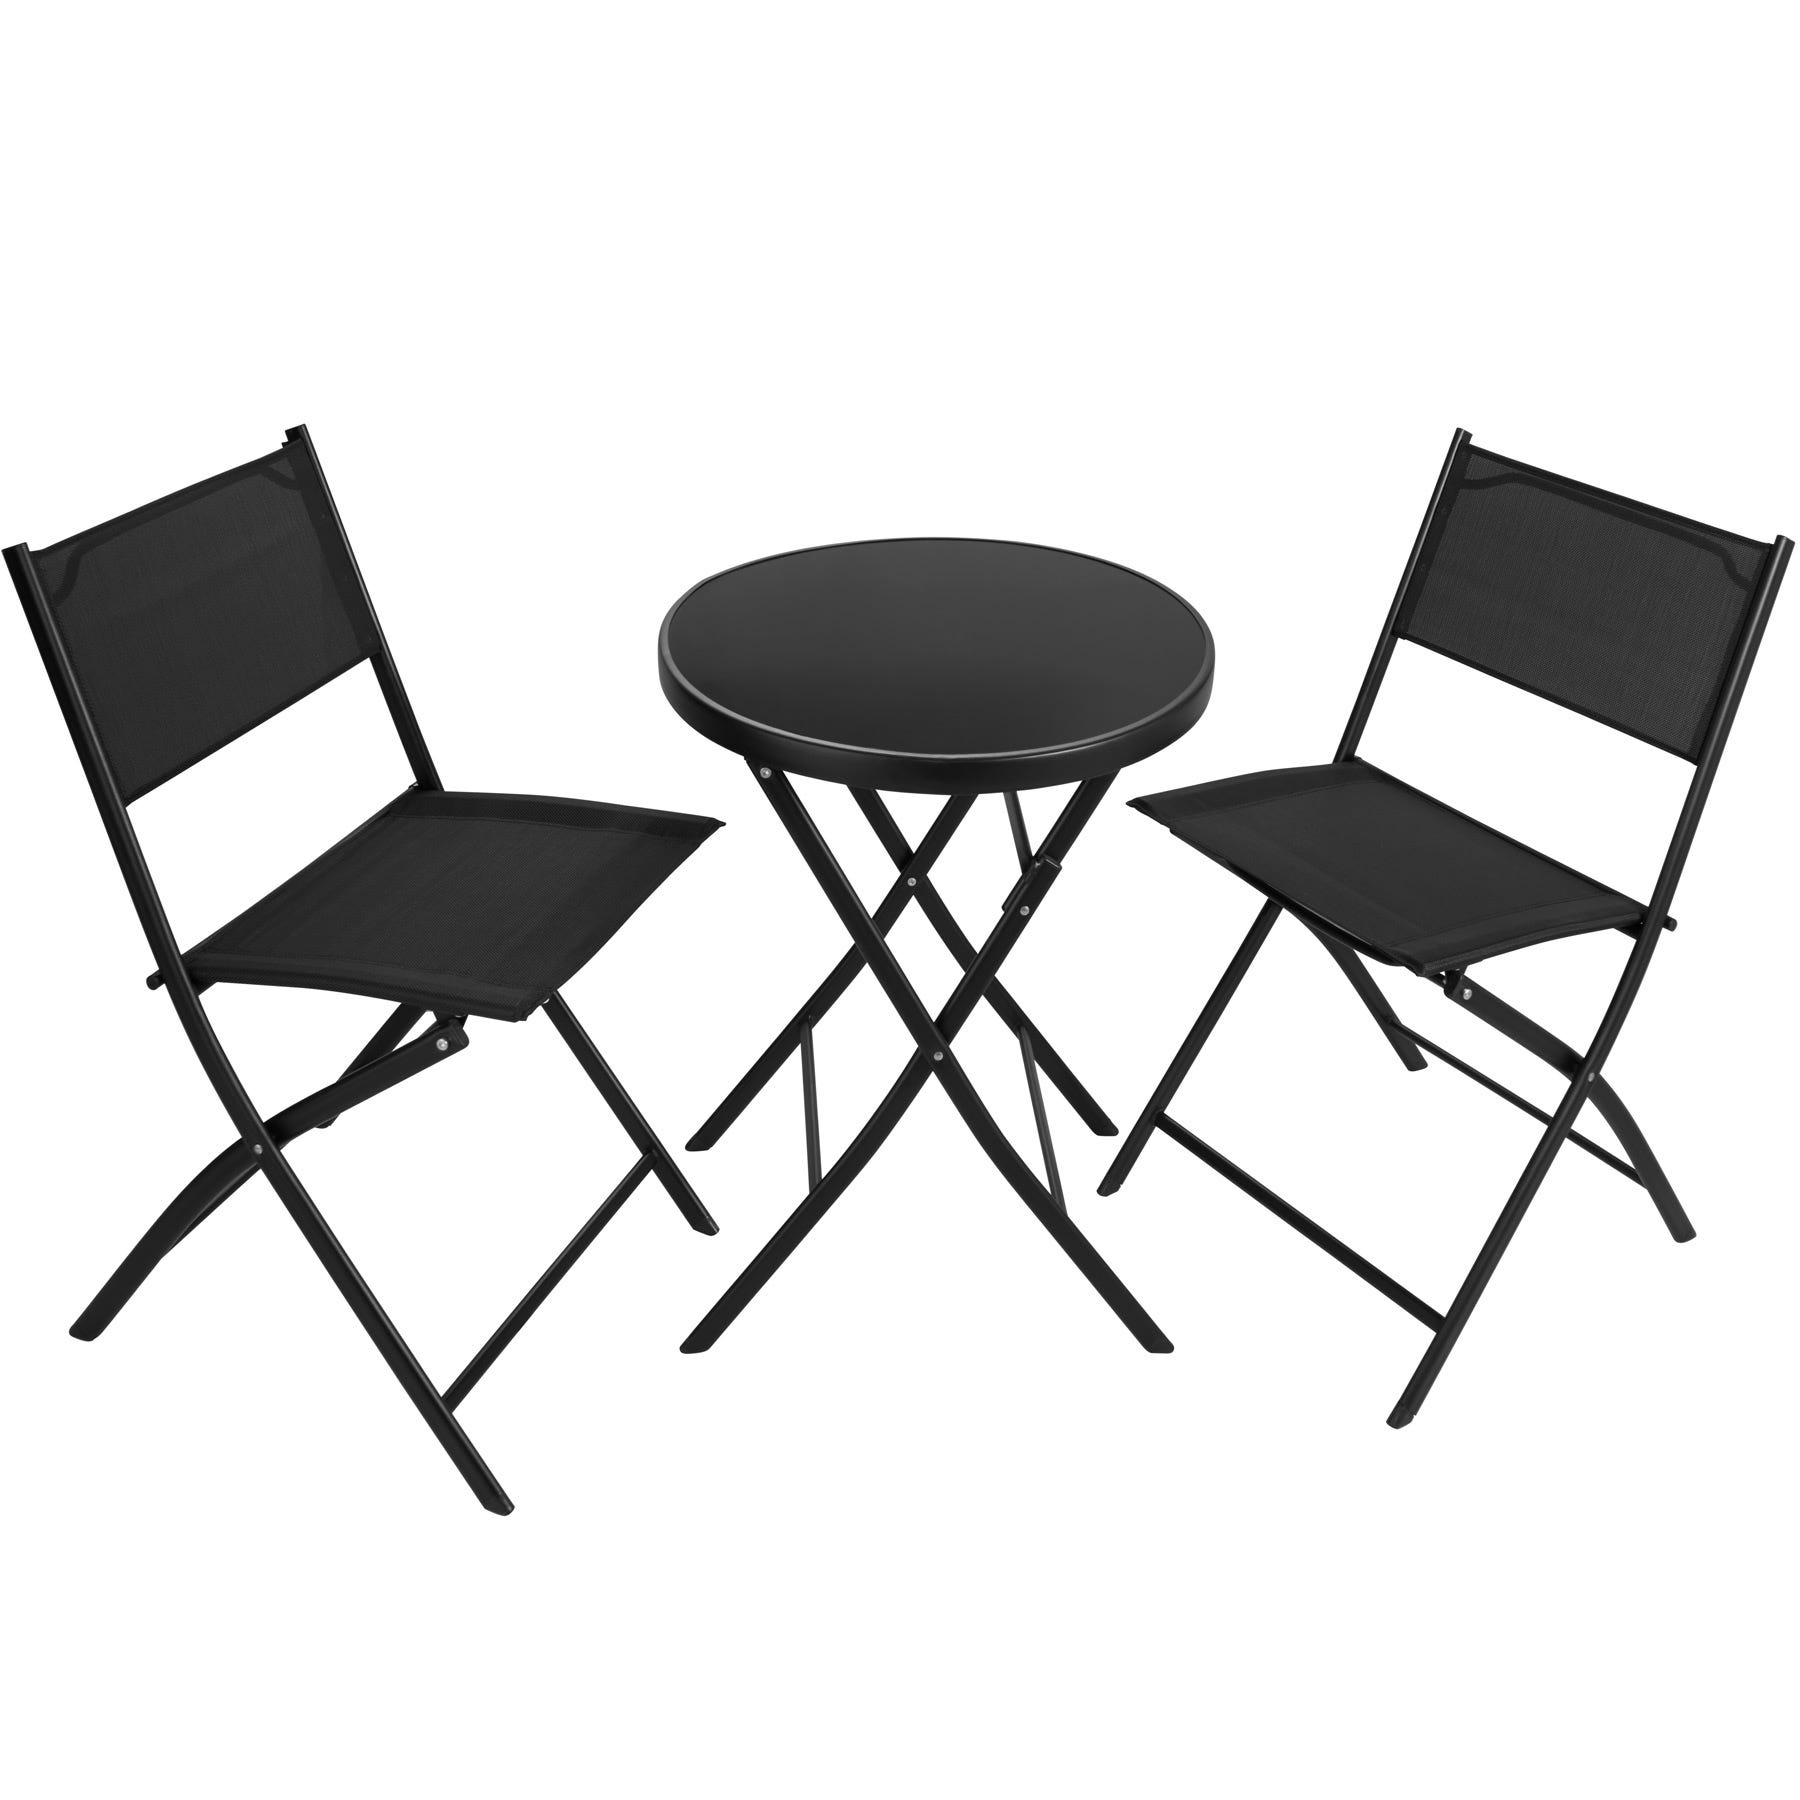 Table ronde + 2 chaises pliantes pour jardin extérieur design moderne Bitter